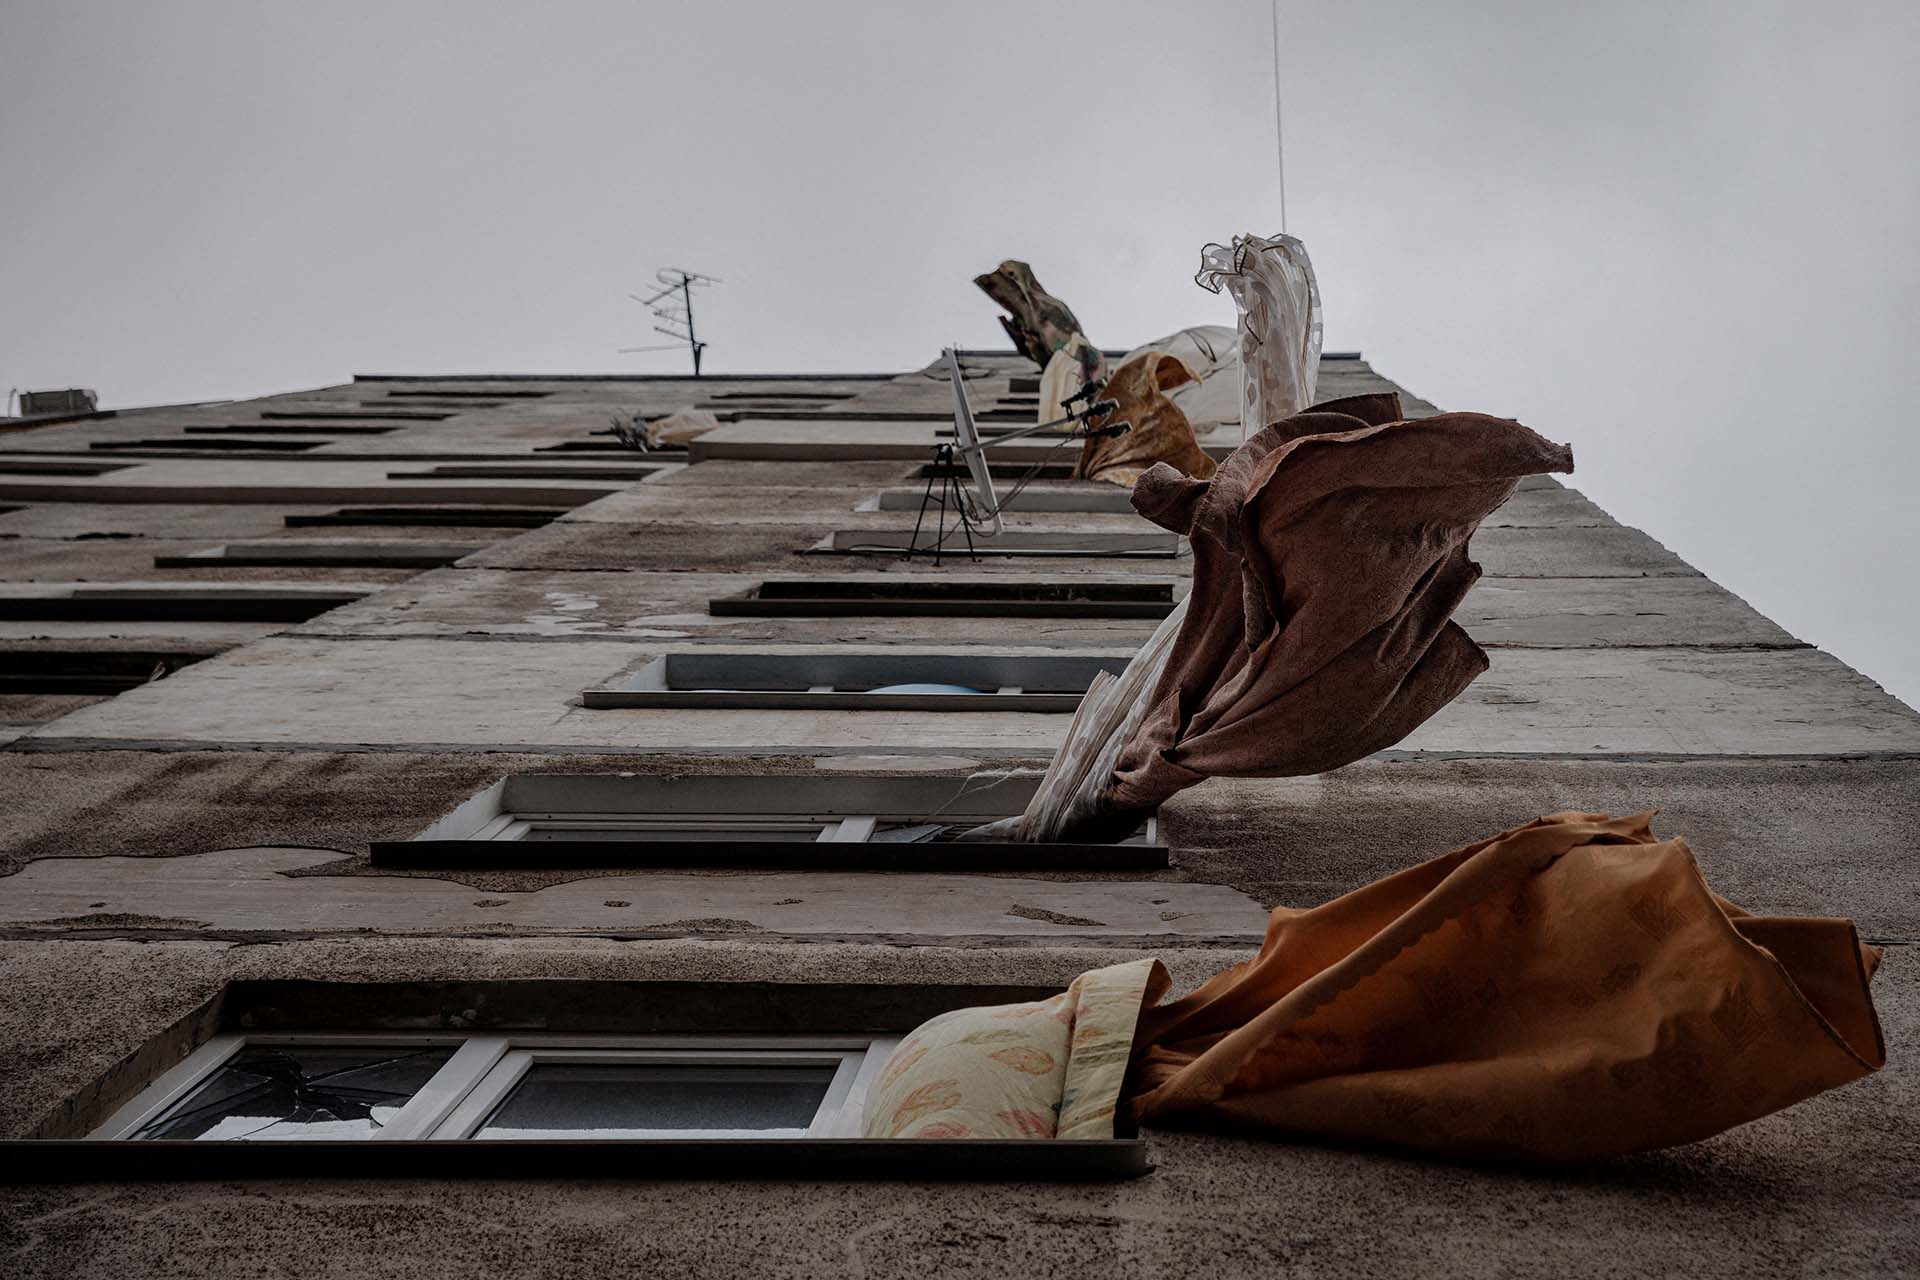 Cortinas flameando con el viento desde las ventanas de un edifico asolado por los bombardeos rusos, en un barrio casi fantasma, que fue abandonado por sus habitantes y dejado sin agua ni gas, en Kharkiv (REUTERS/Thomas Peter)